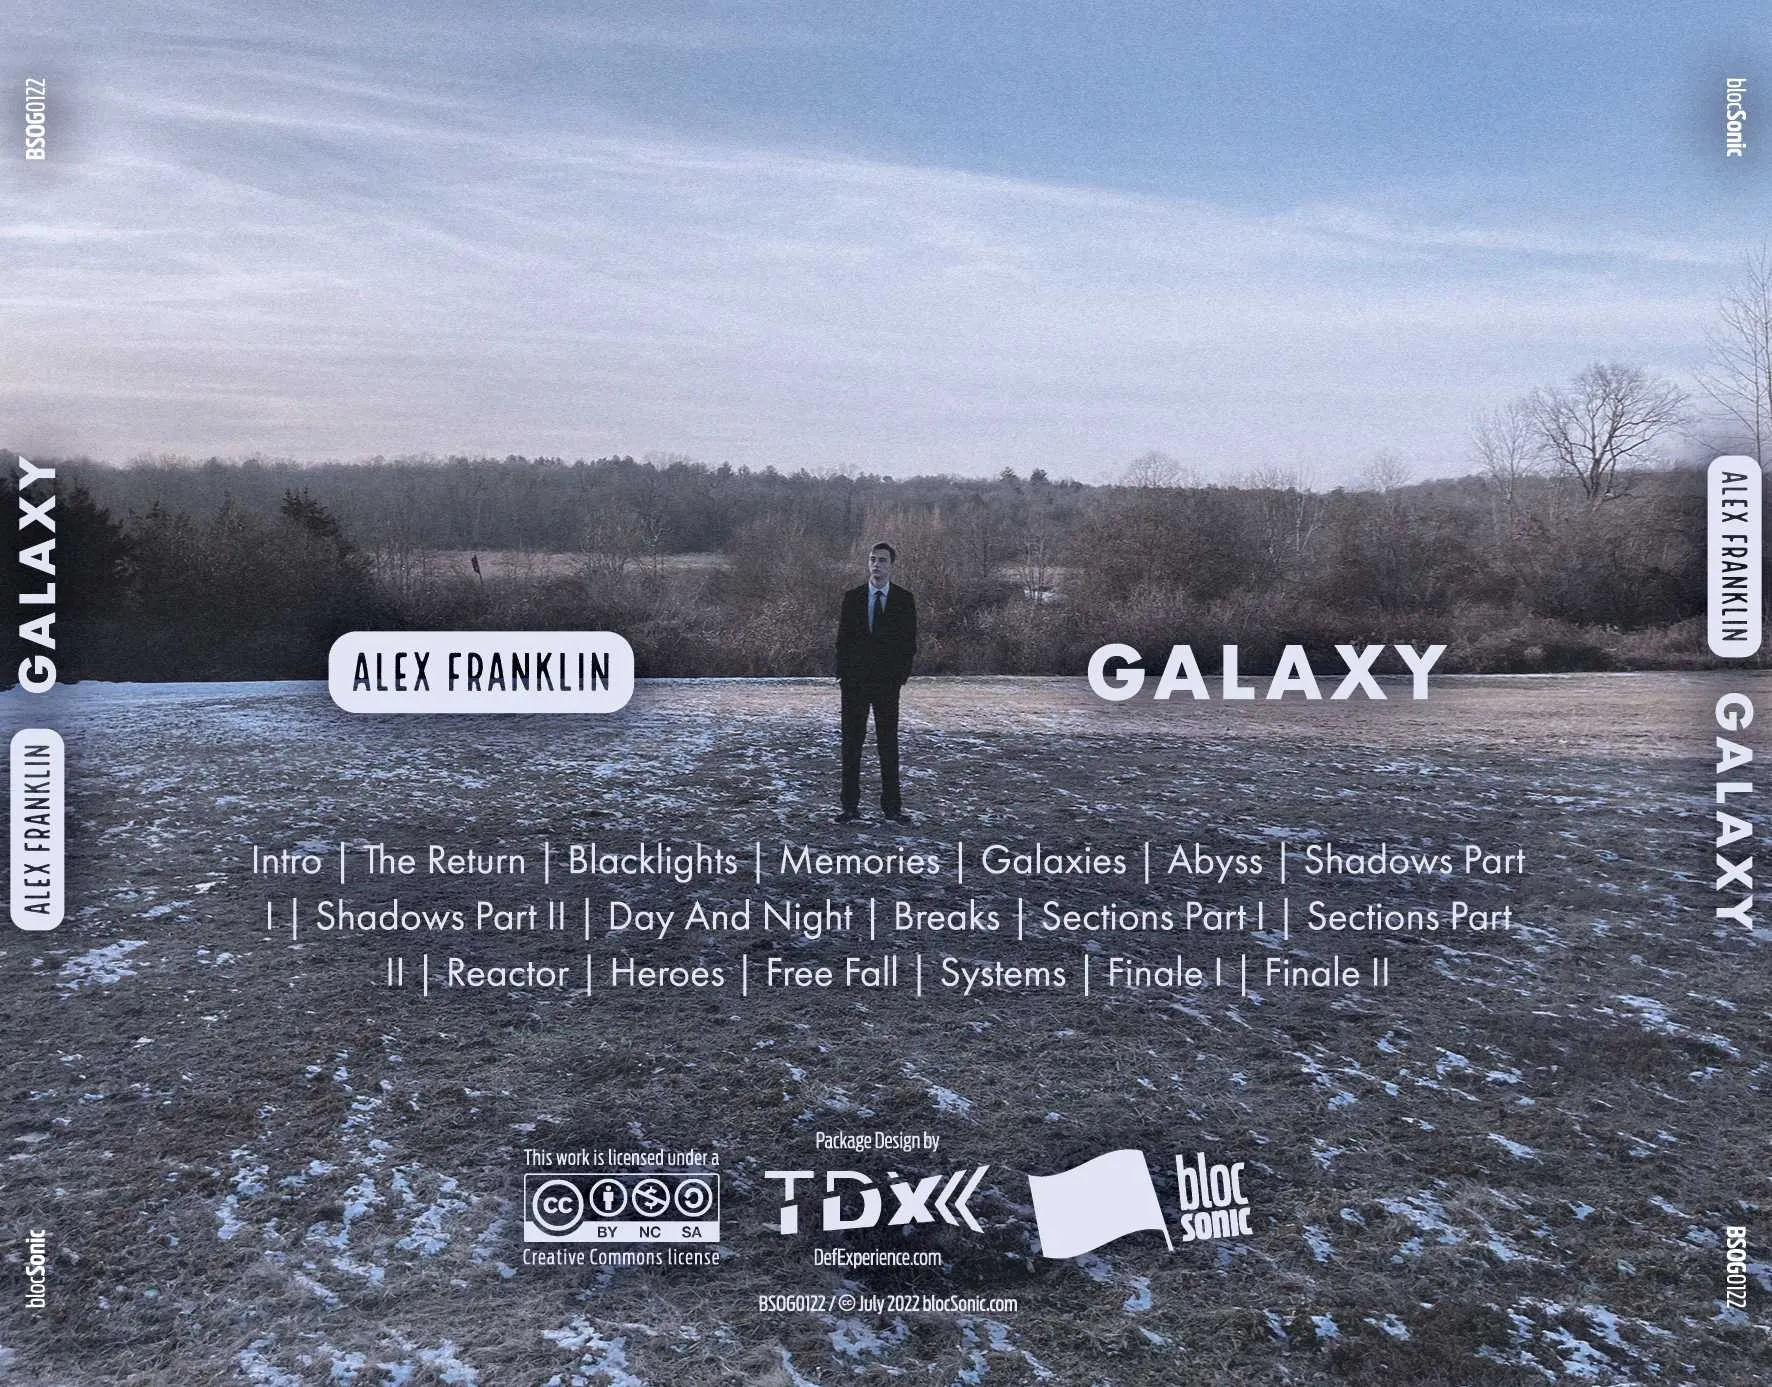 Album traycard for “Galaxy” by Alex Franklin